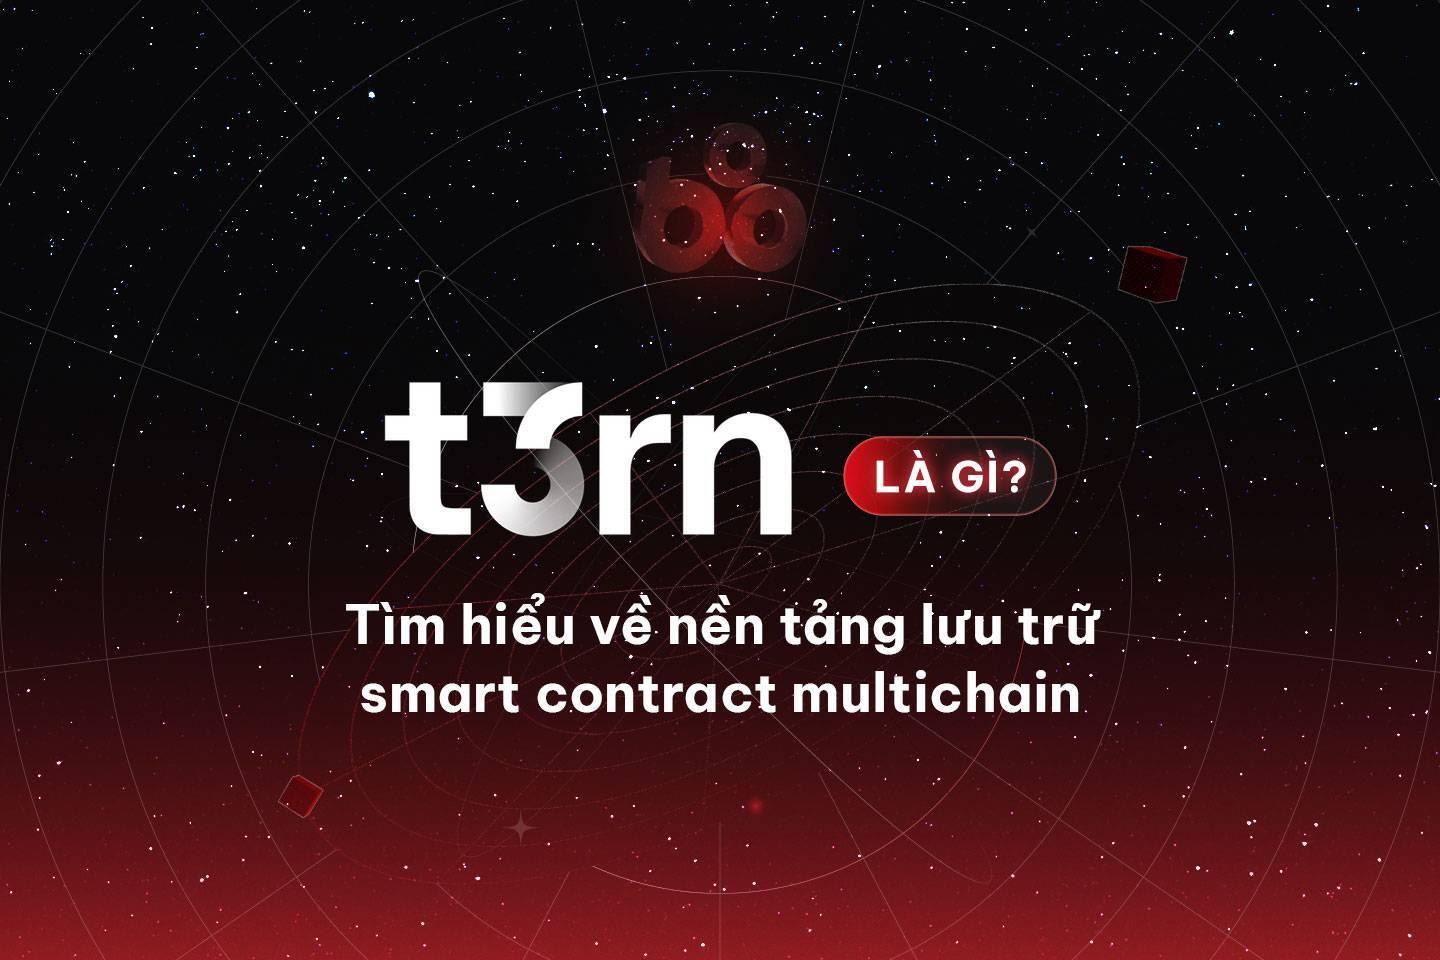 t3rn-la-gi-tim-hieu-ve-nen-tang-luu-tru-smart-contract-multichain